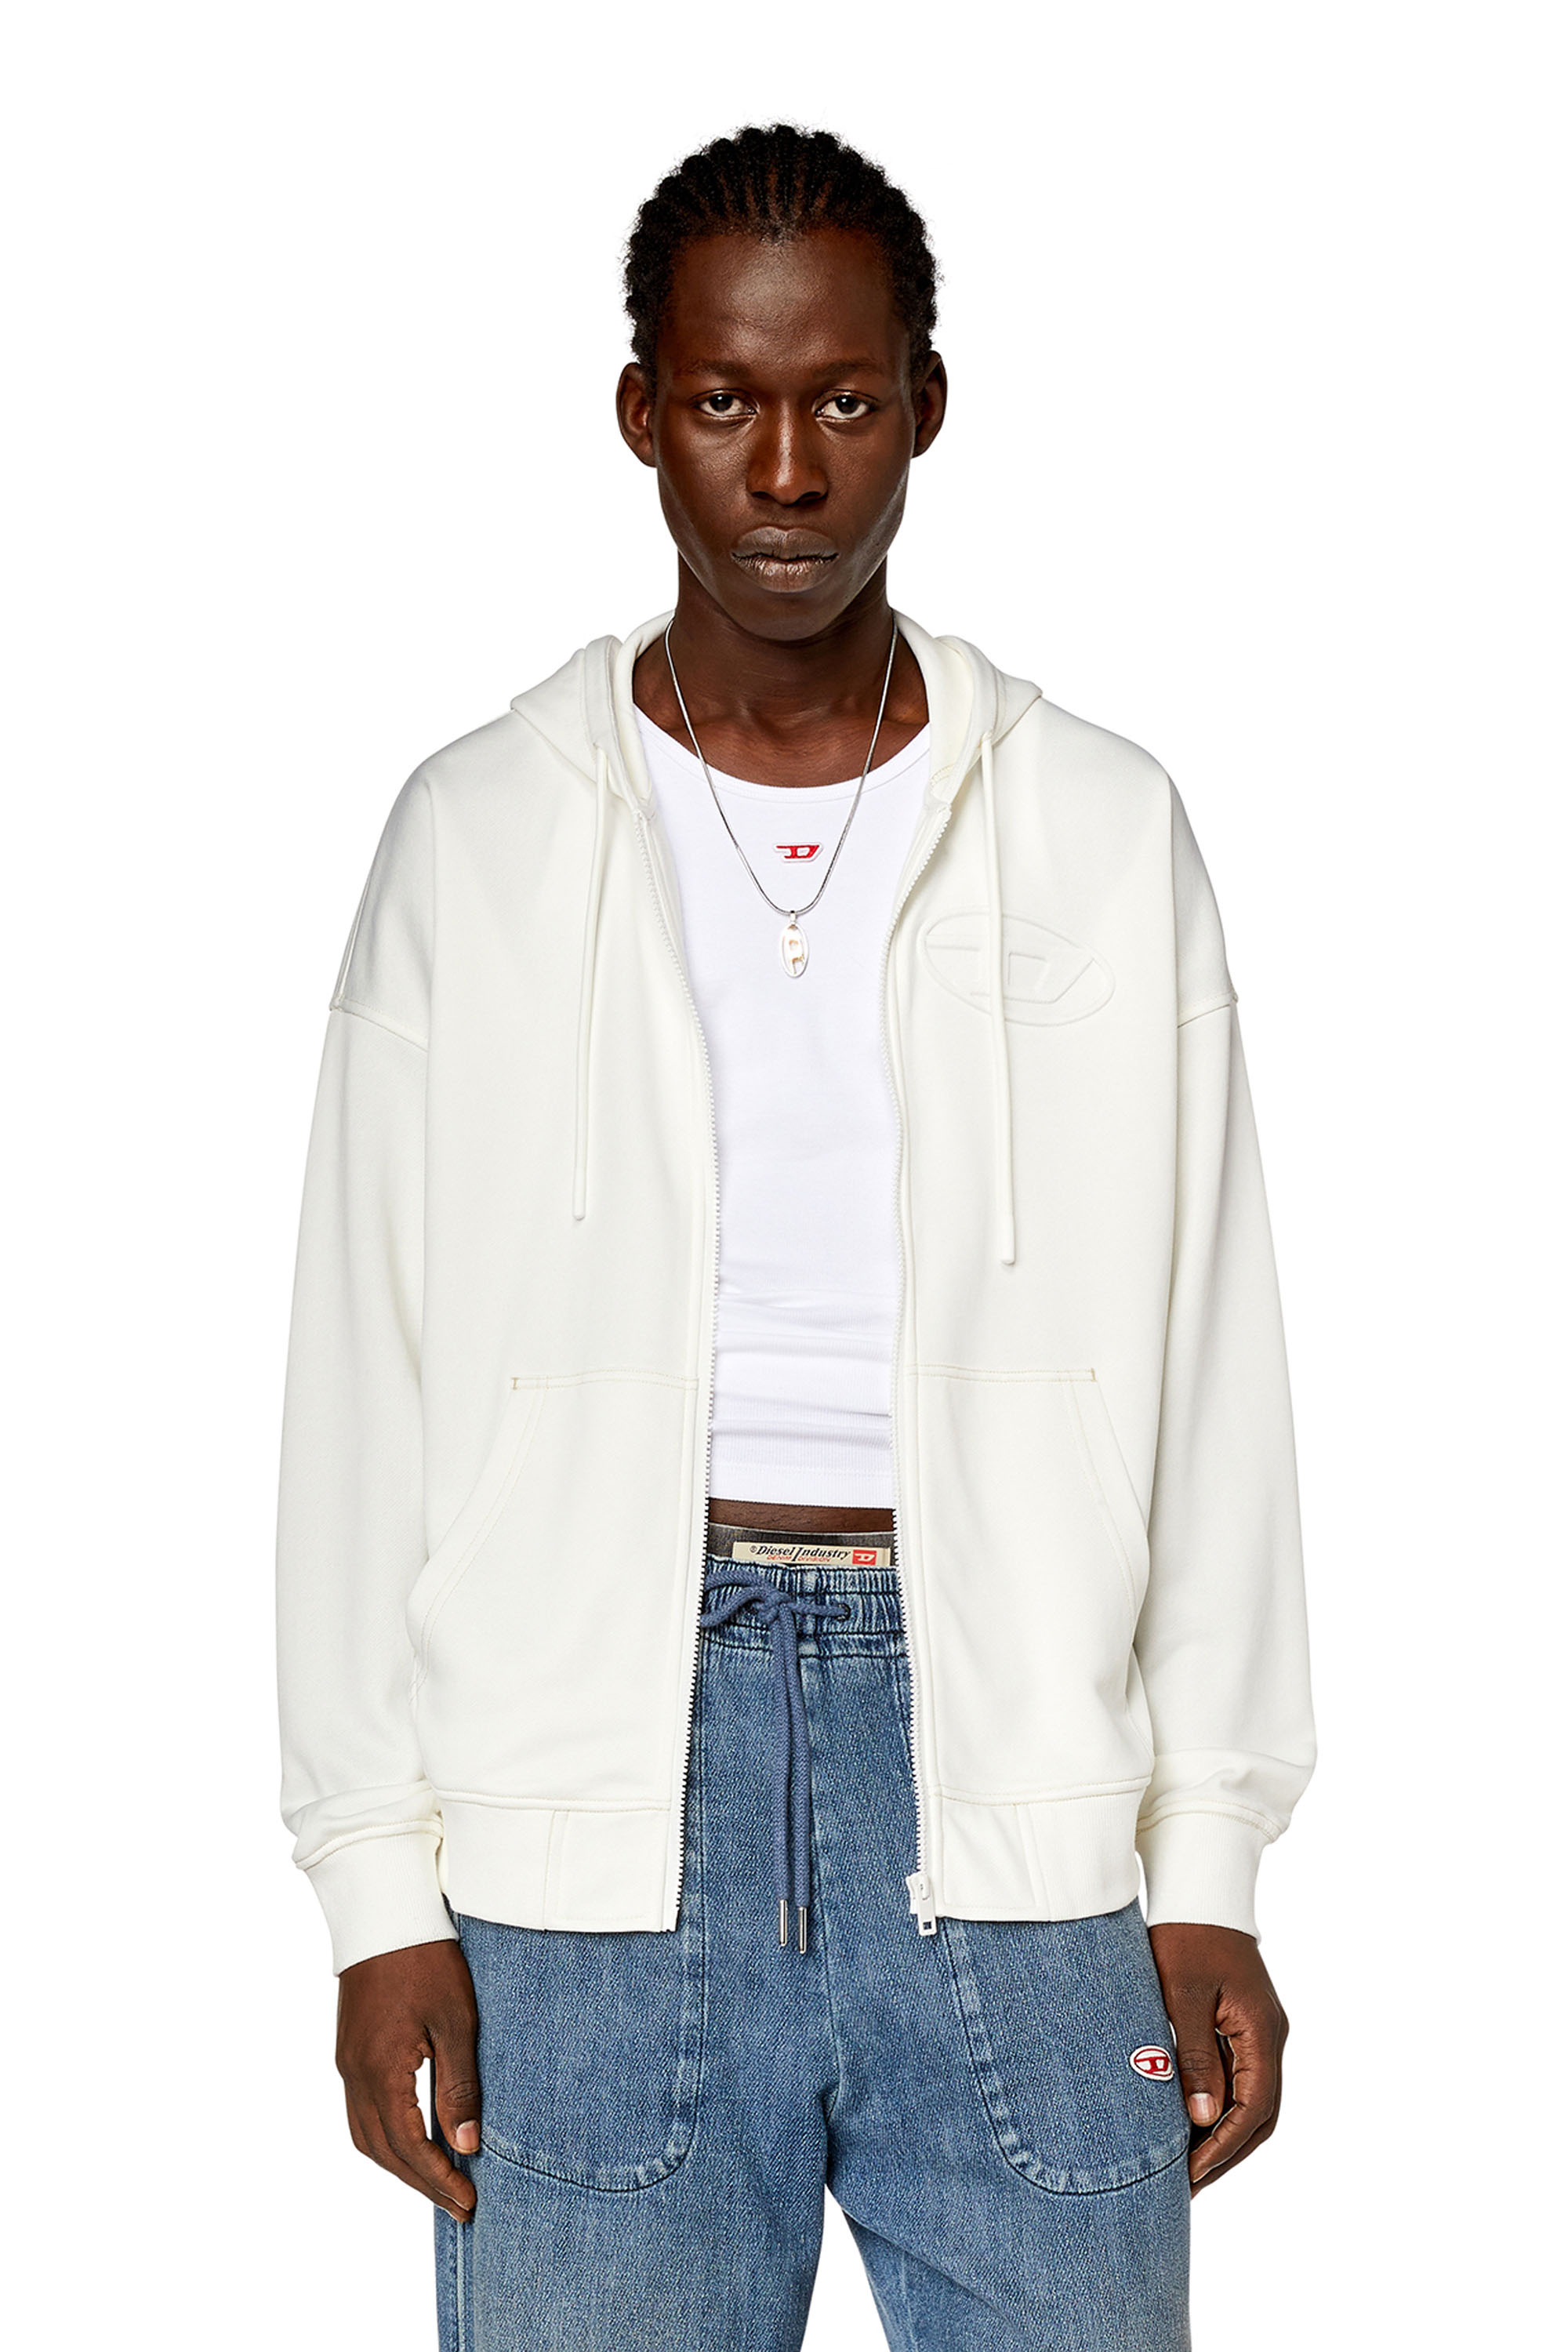 Diesel - Sweat-shirt à capuche zippé avec logo Oval D embossé - Pull Cotton - Homme - Blanc